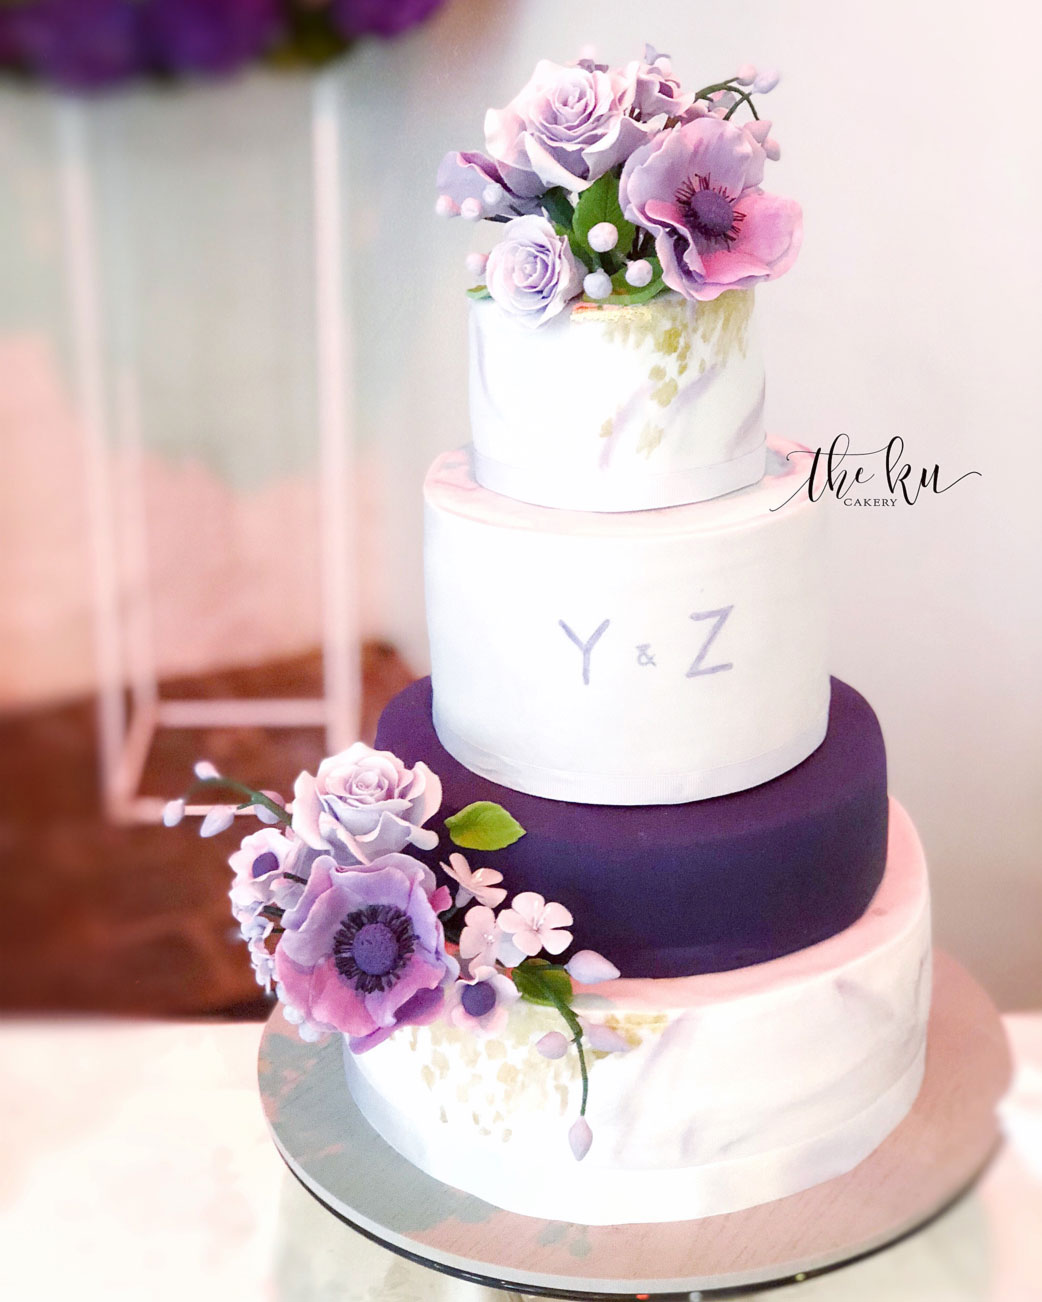 Wedding Cake by Karen Ku